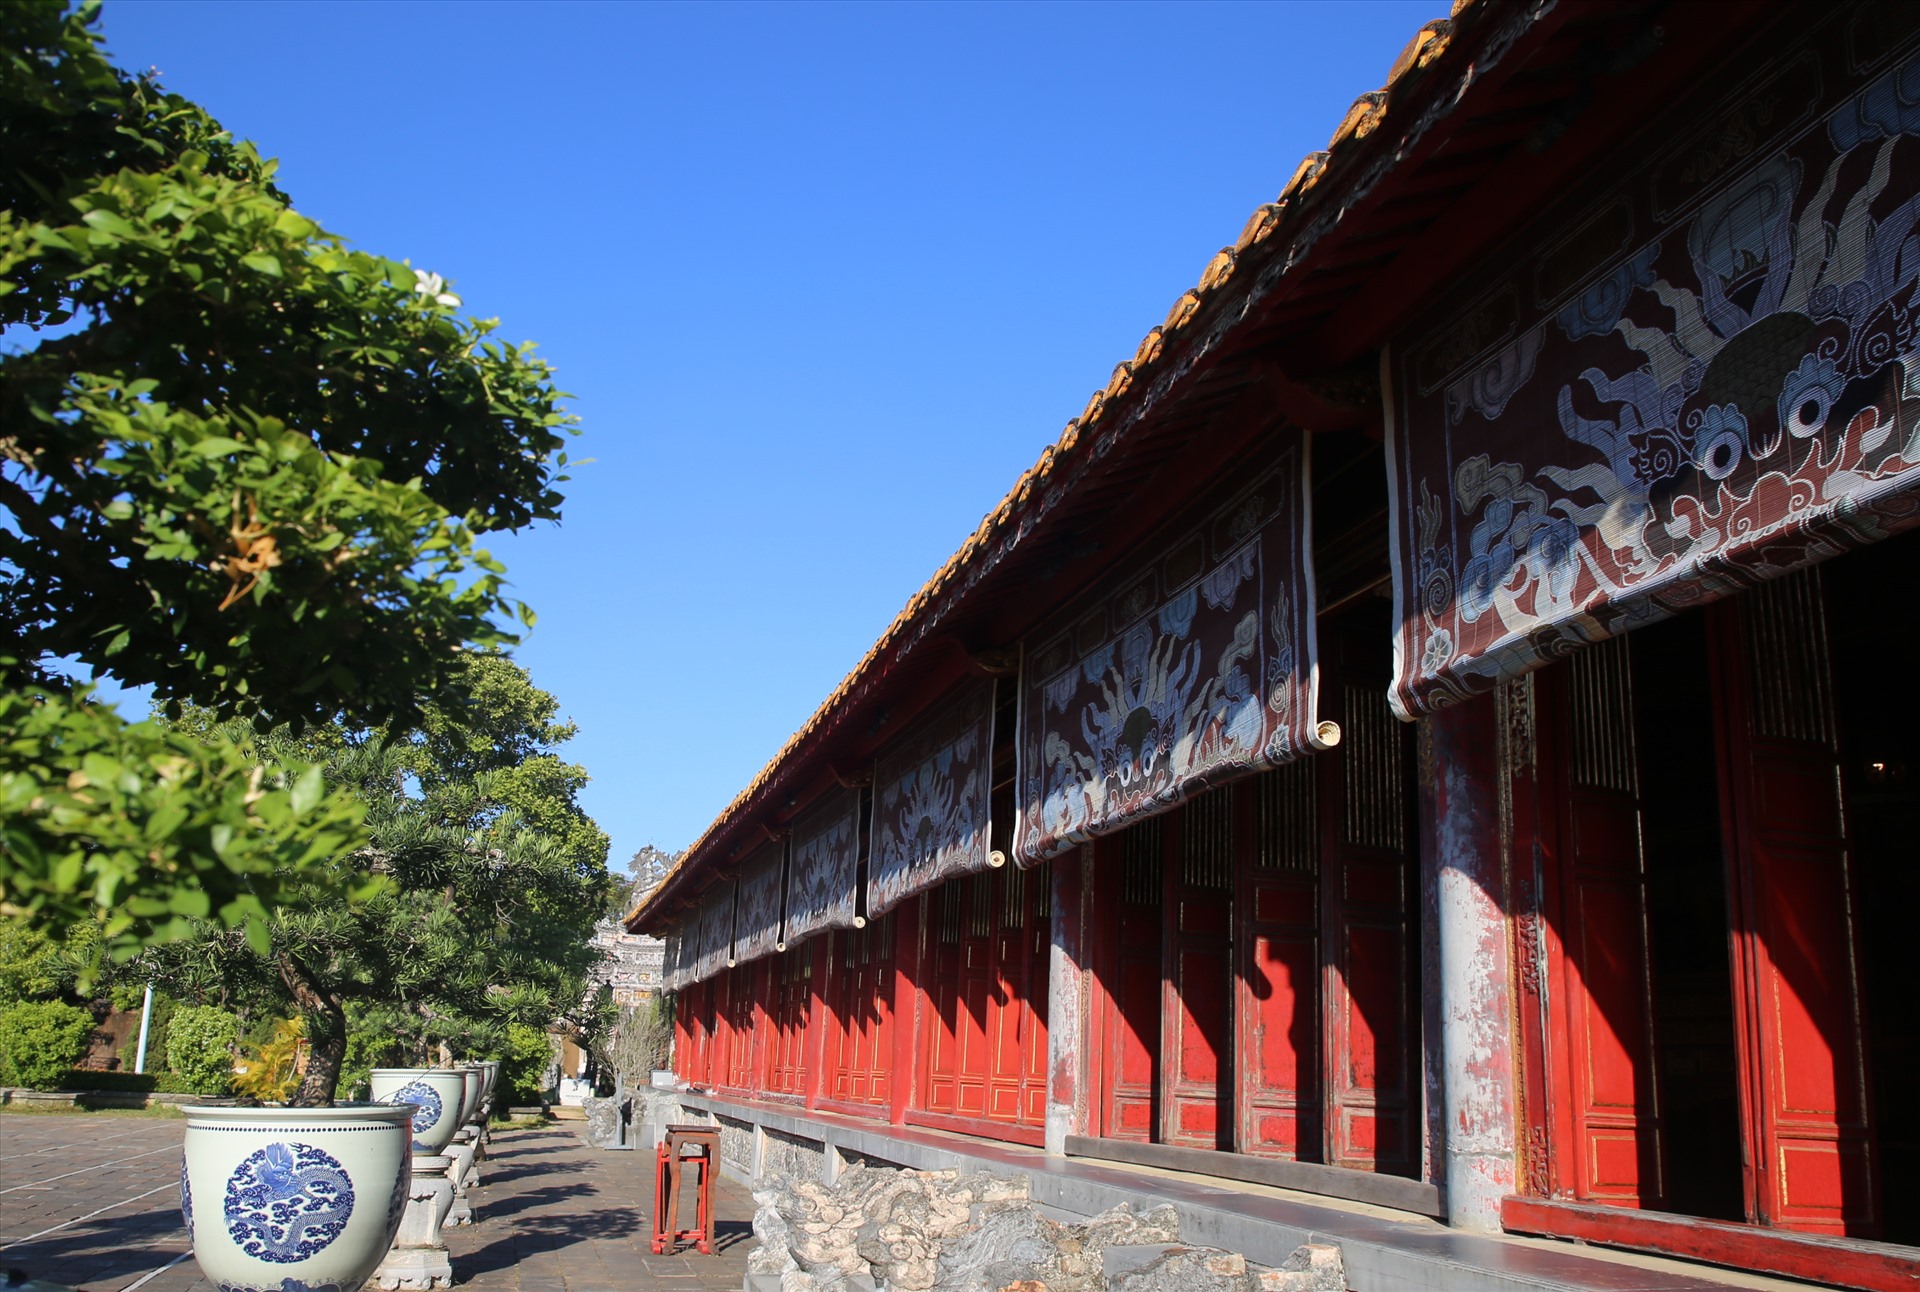 Thế miếu - Đại nội Huế (tỉnh Thừa Thiên - Huế) nơi thờ chung các vị vua triều Nguyễn. Miếu tọa lạc ở góc tây nam bên trong Hoàng thành.